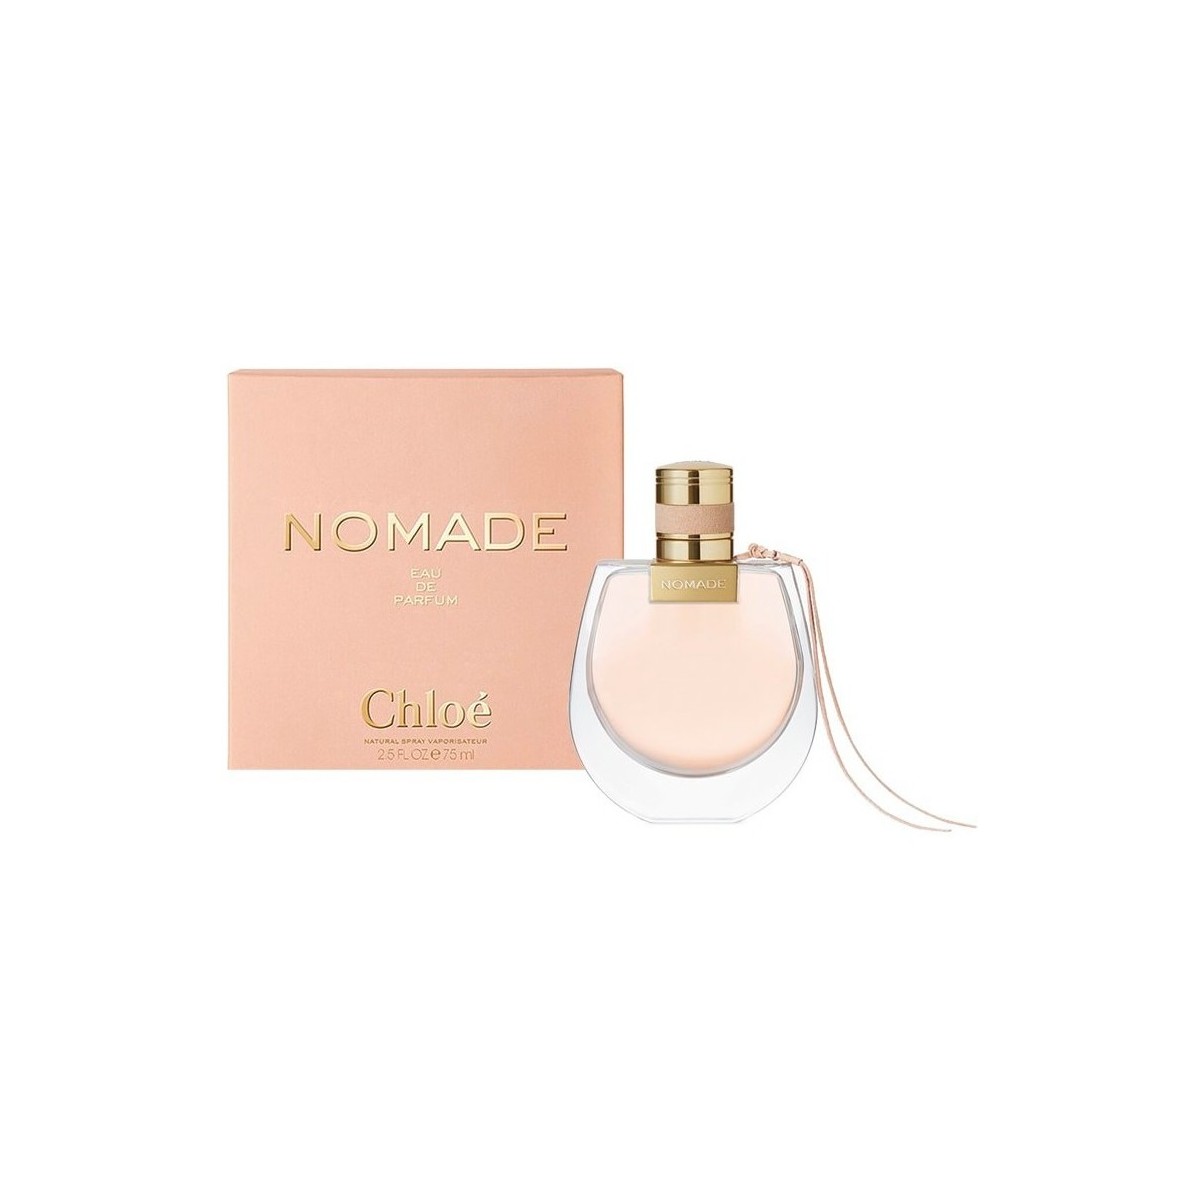 Beauty Damen Eau de parfum  Chloe Nomade - Parfüm - 75ml - VERDAMPFER Nomade - perfume - 75ml - spray